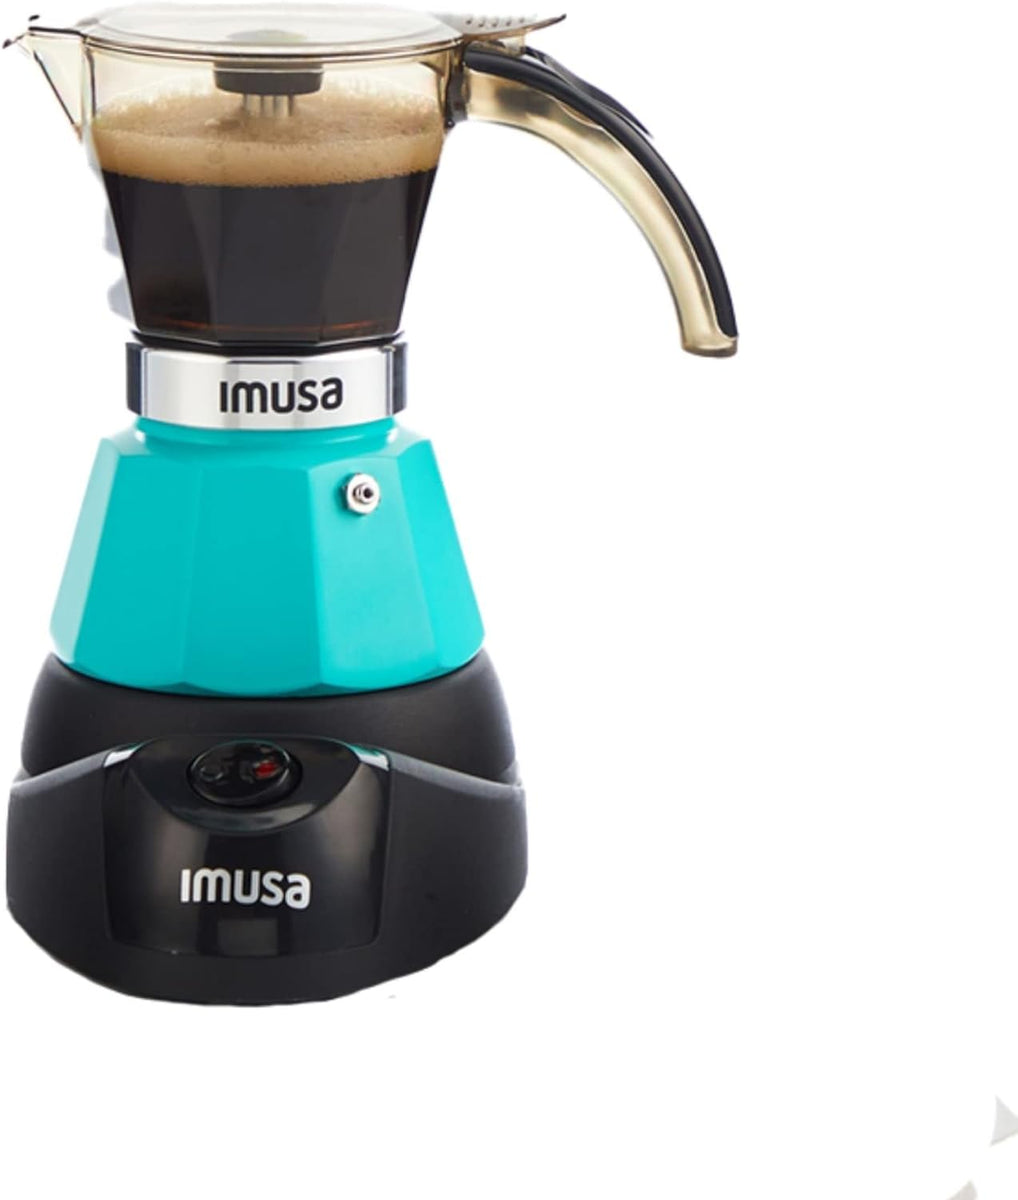 Imusa 4 Cup Epic Electric Espresso/Cappuccino Maker (Cafe Cubano,  Cortadito, Colada, Cafe con Leche), Red